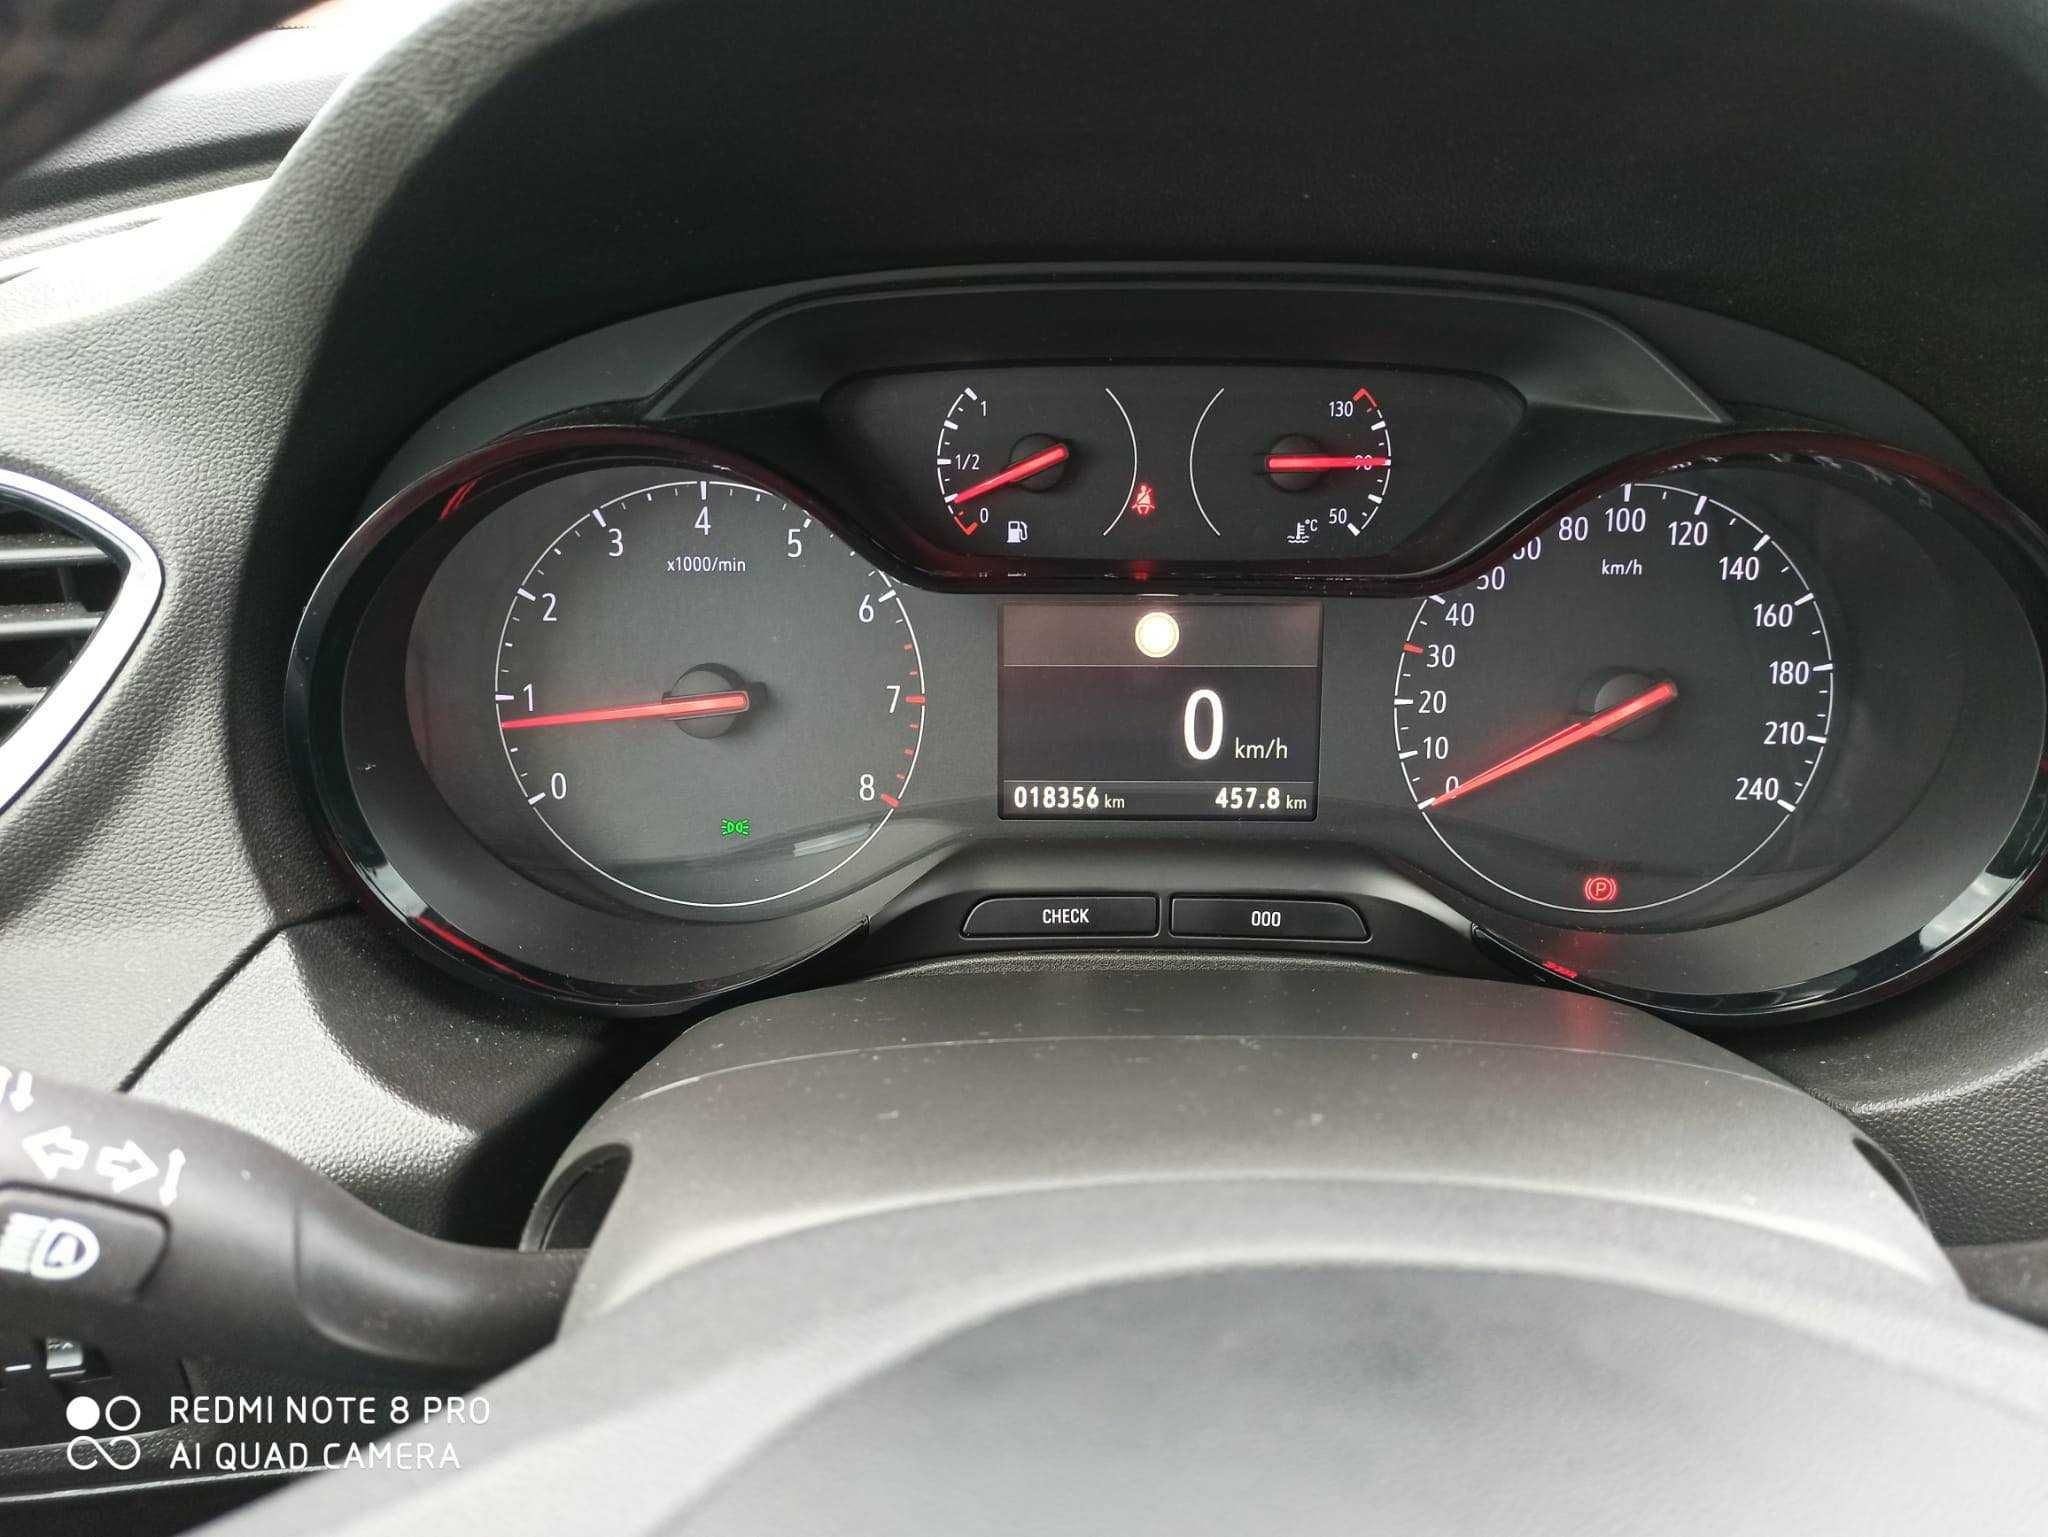 Opel Granland X, 1.2 benzyna, przebieg 18350 km